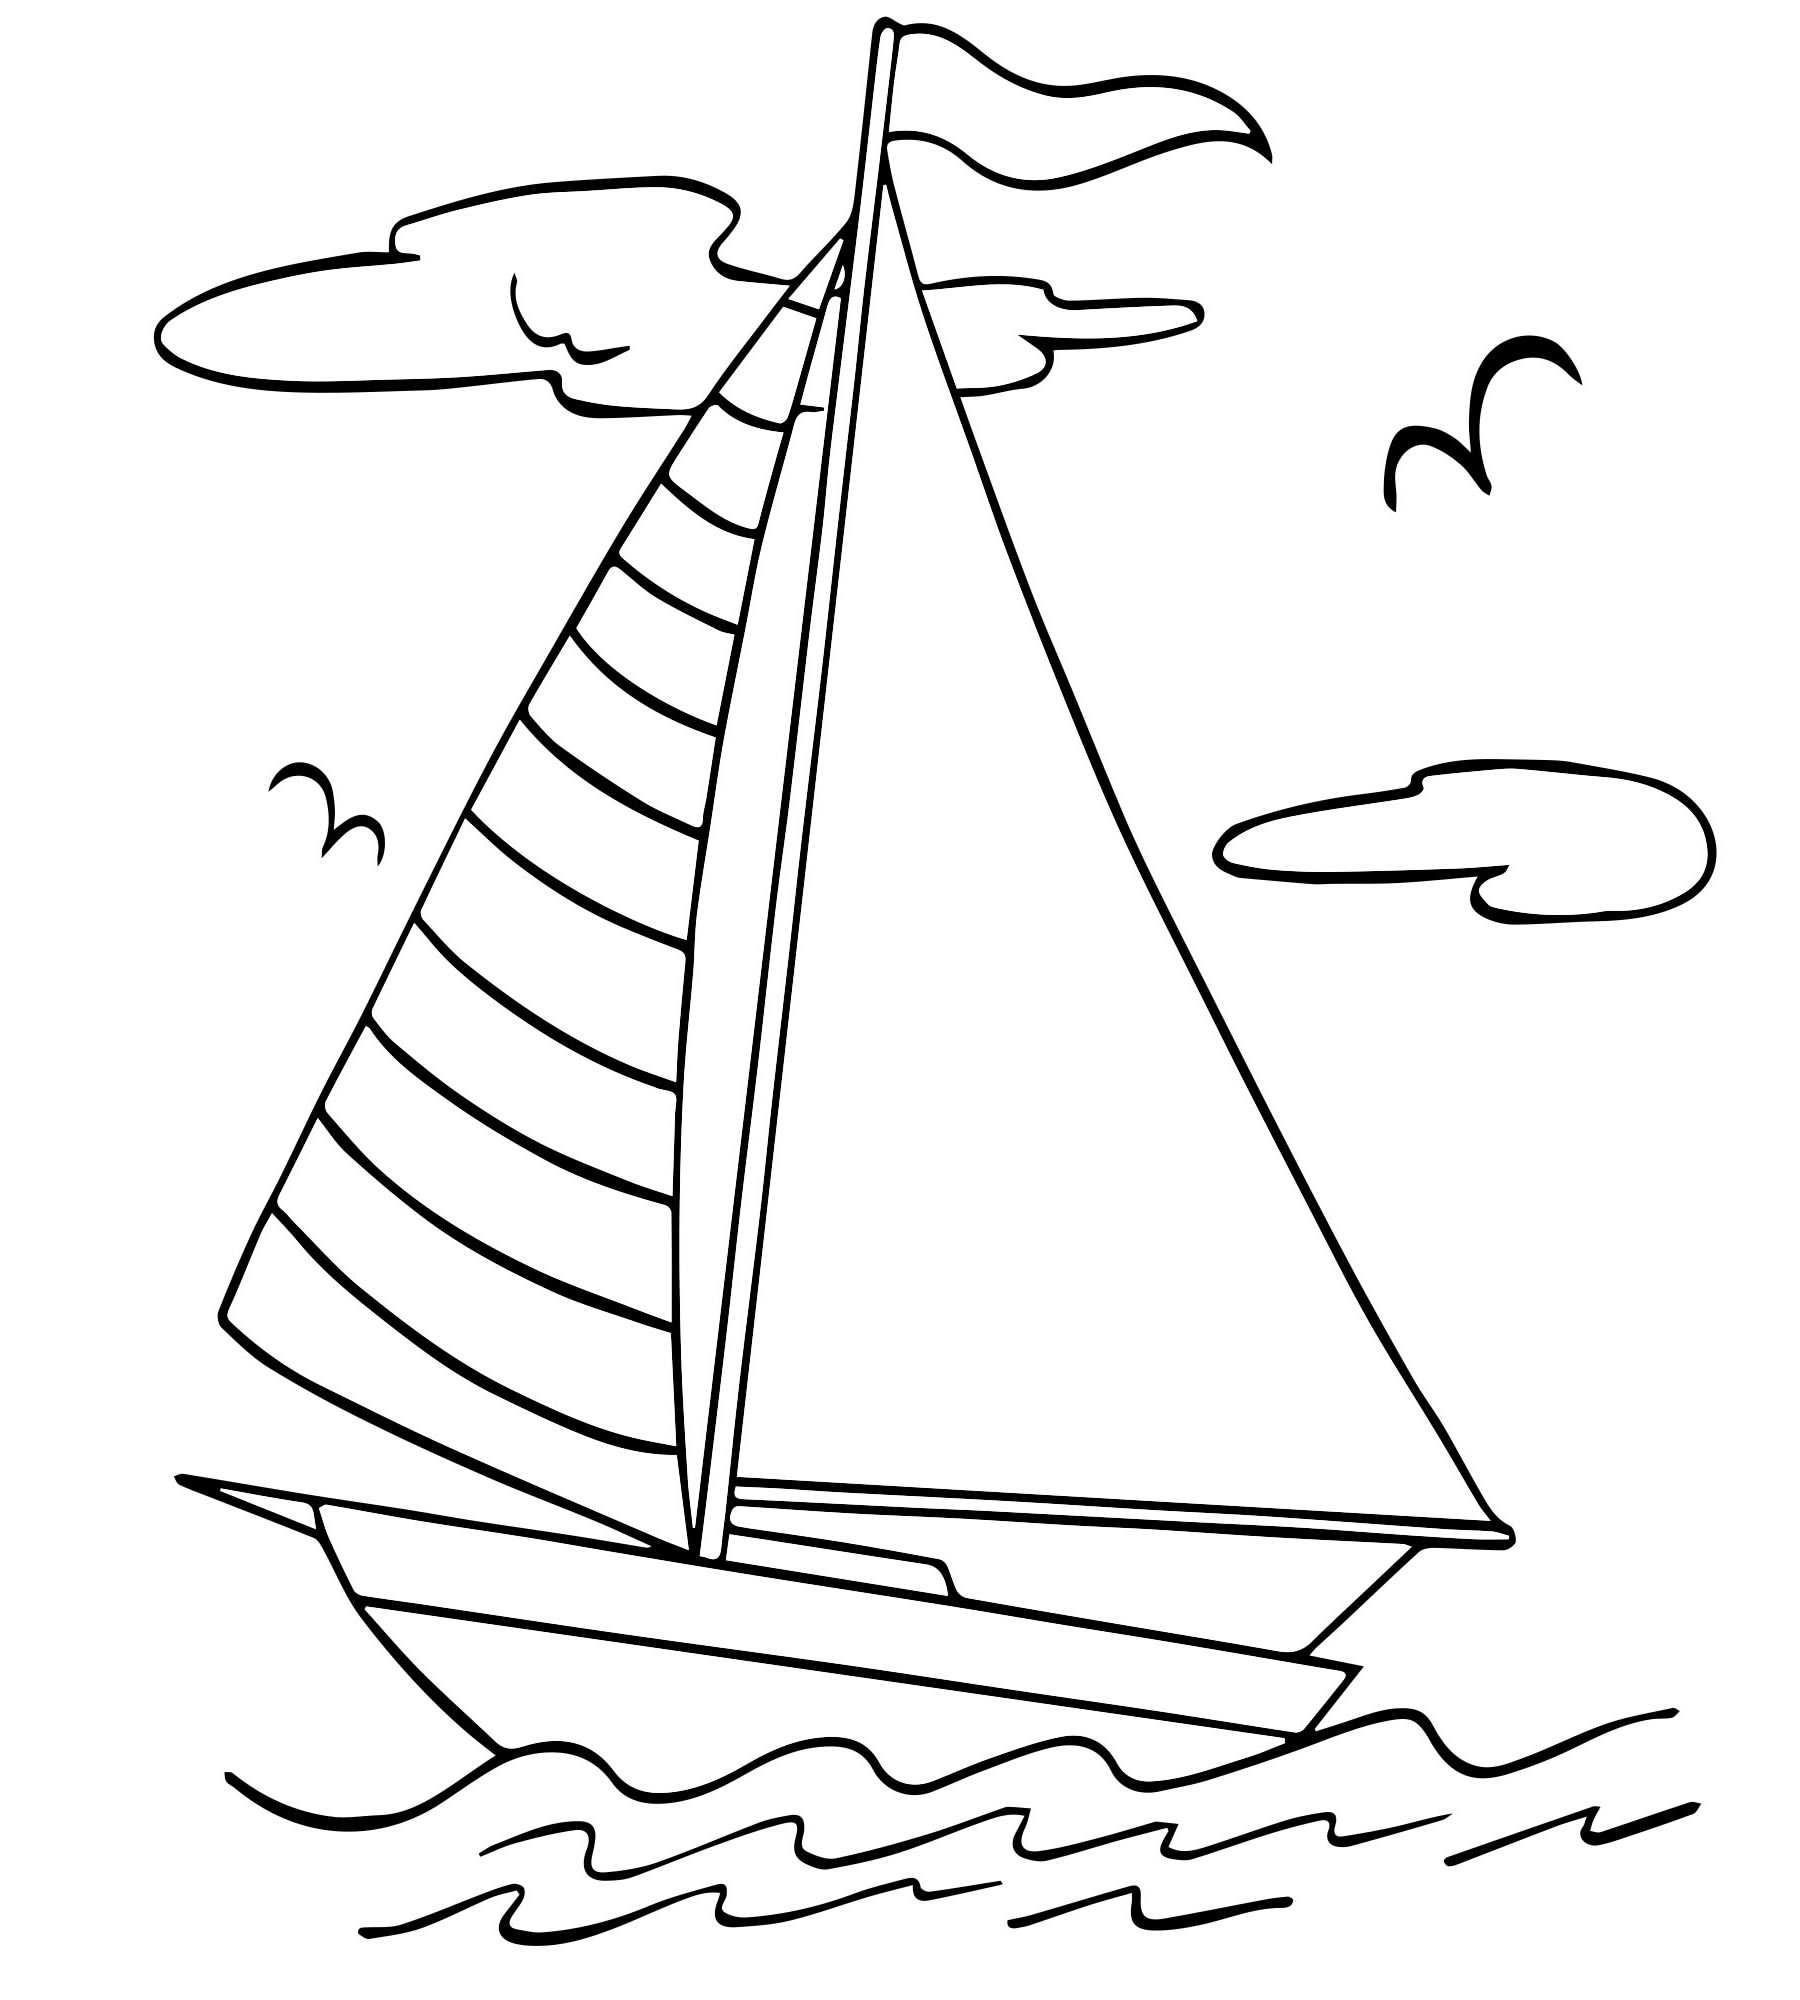 бесшовные модели Раскраска лодка, рыба чистая векторные иллюстрации